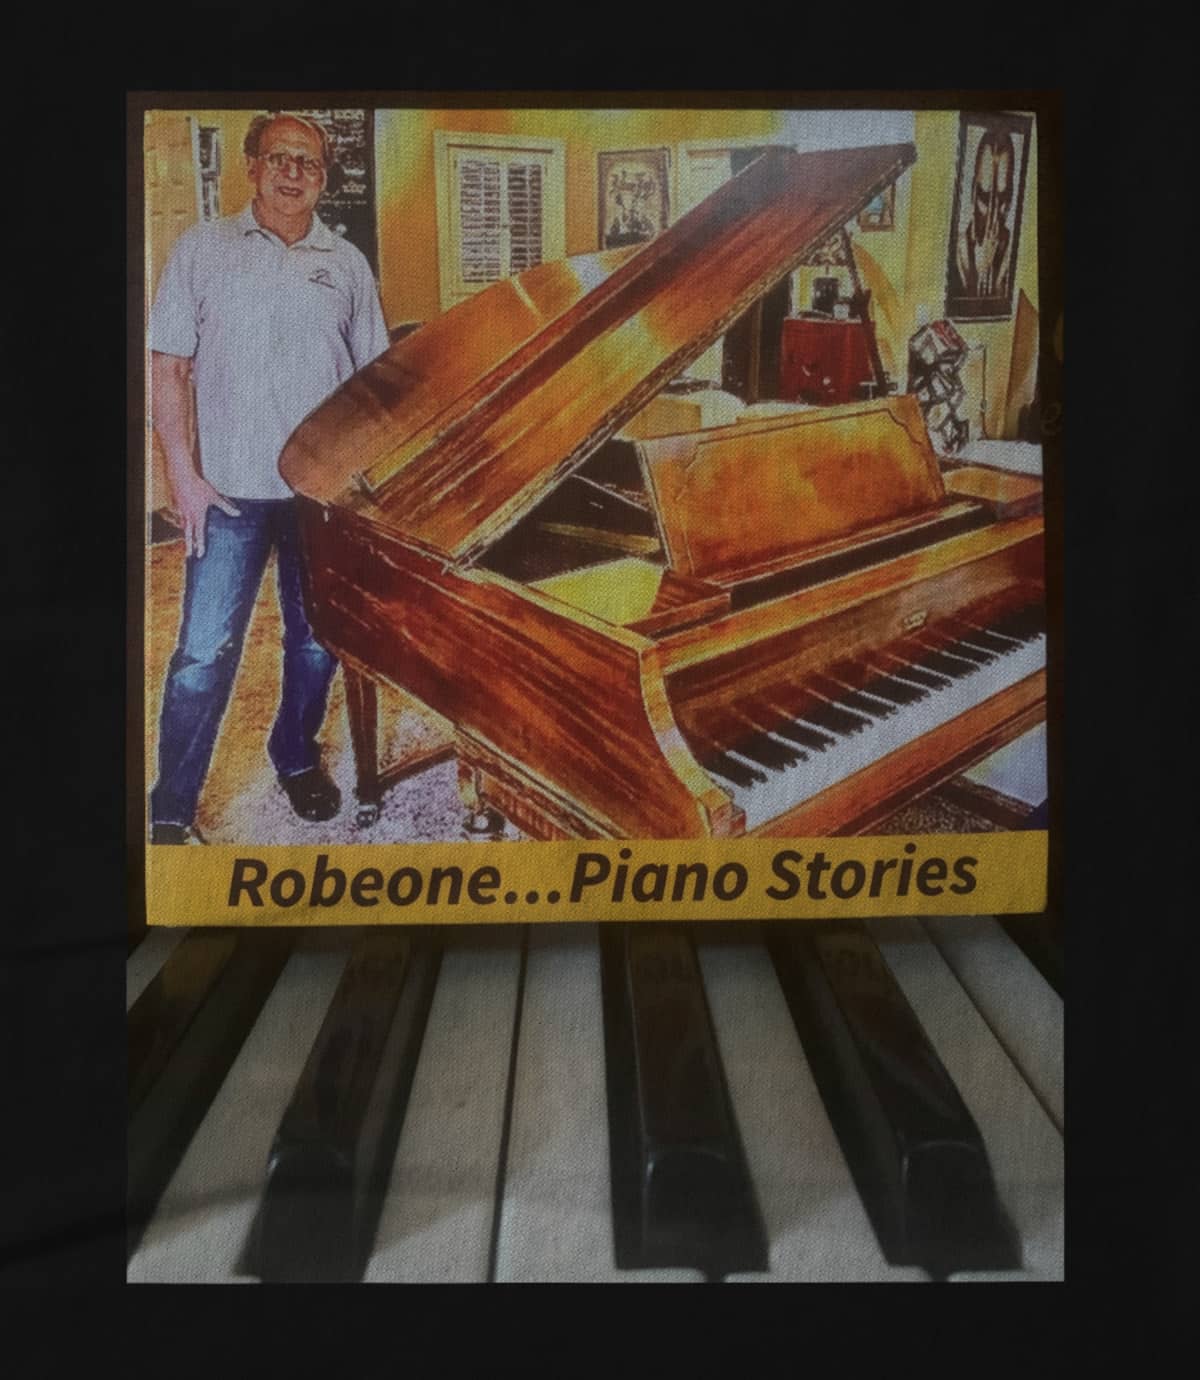 Robert schindler piano stories 1616795466